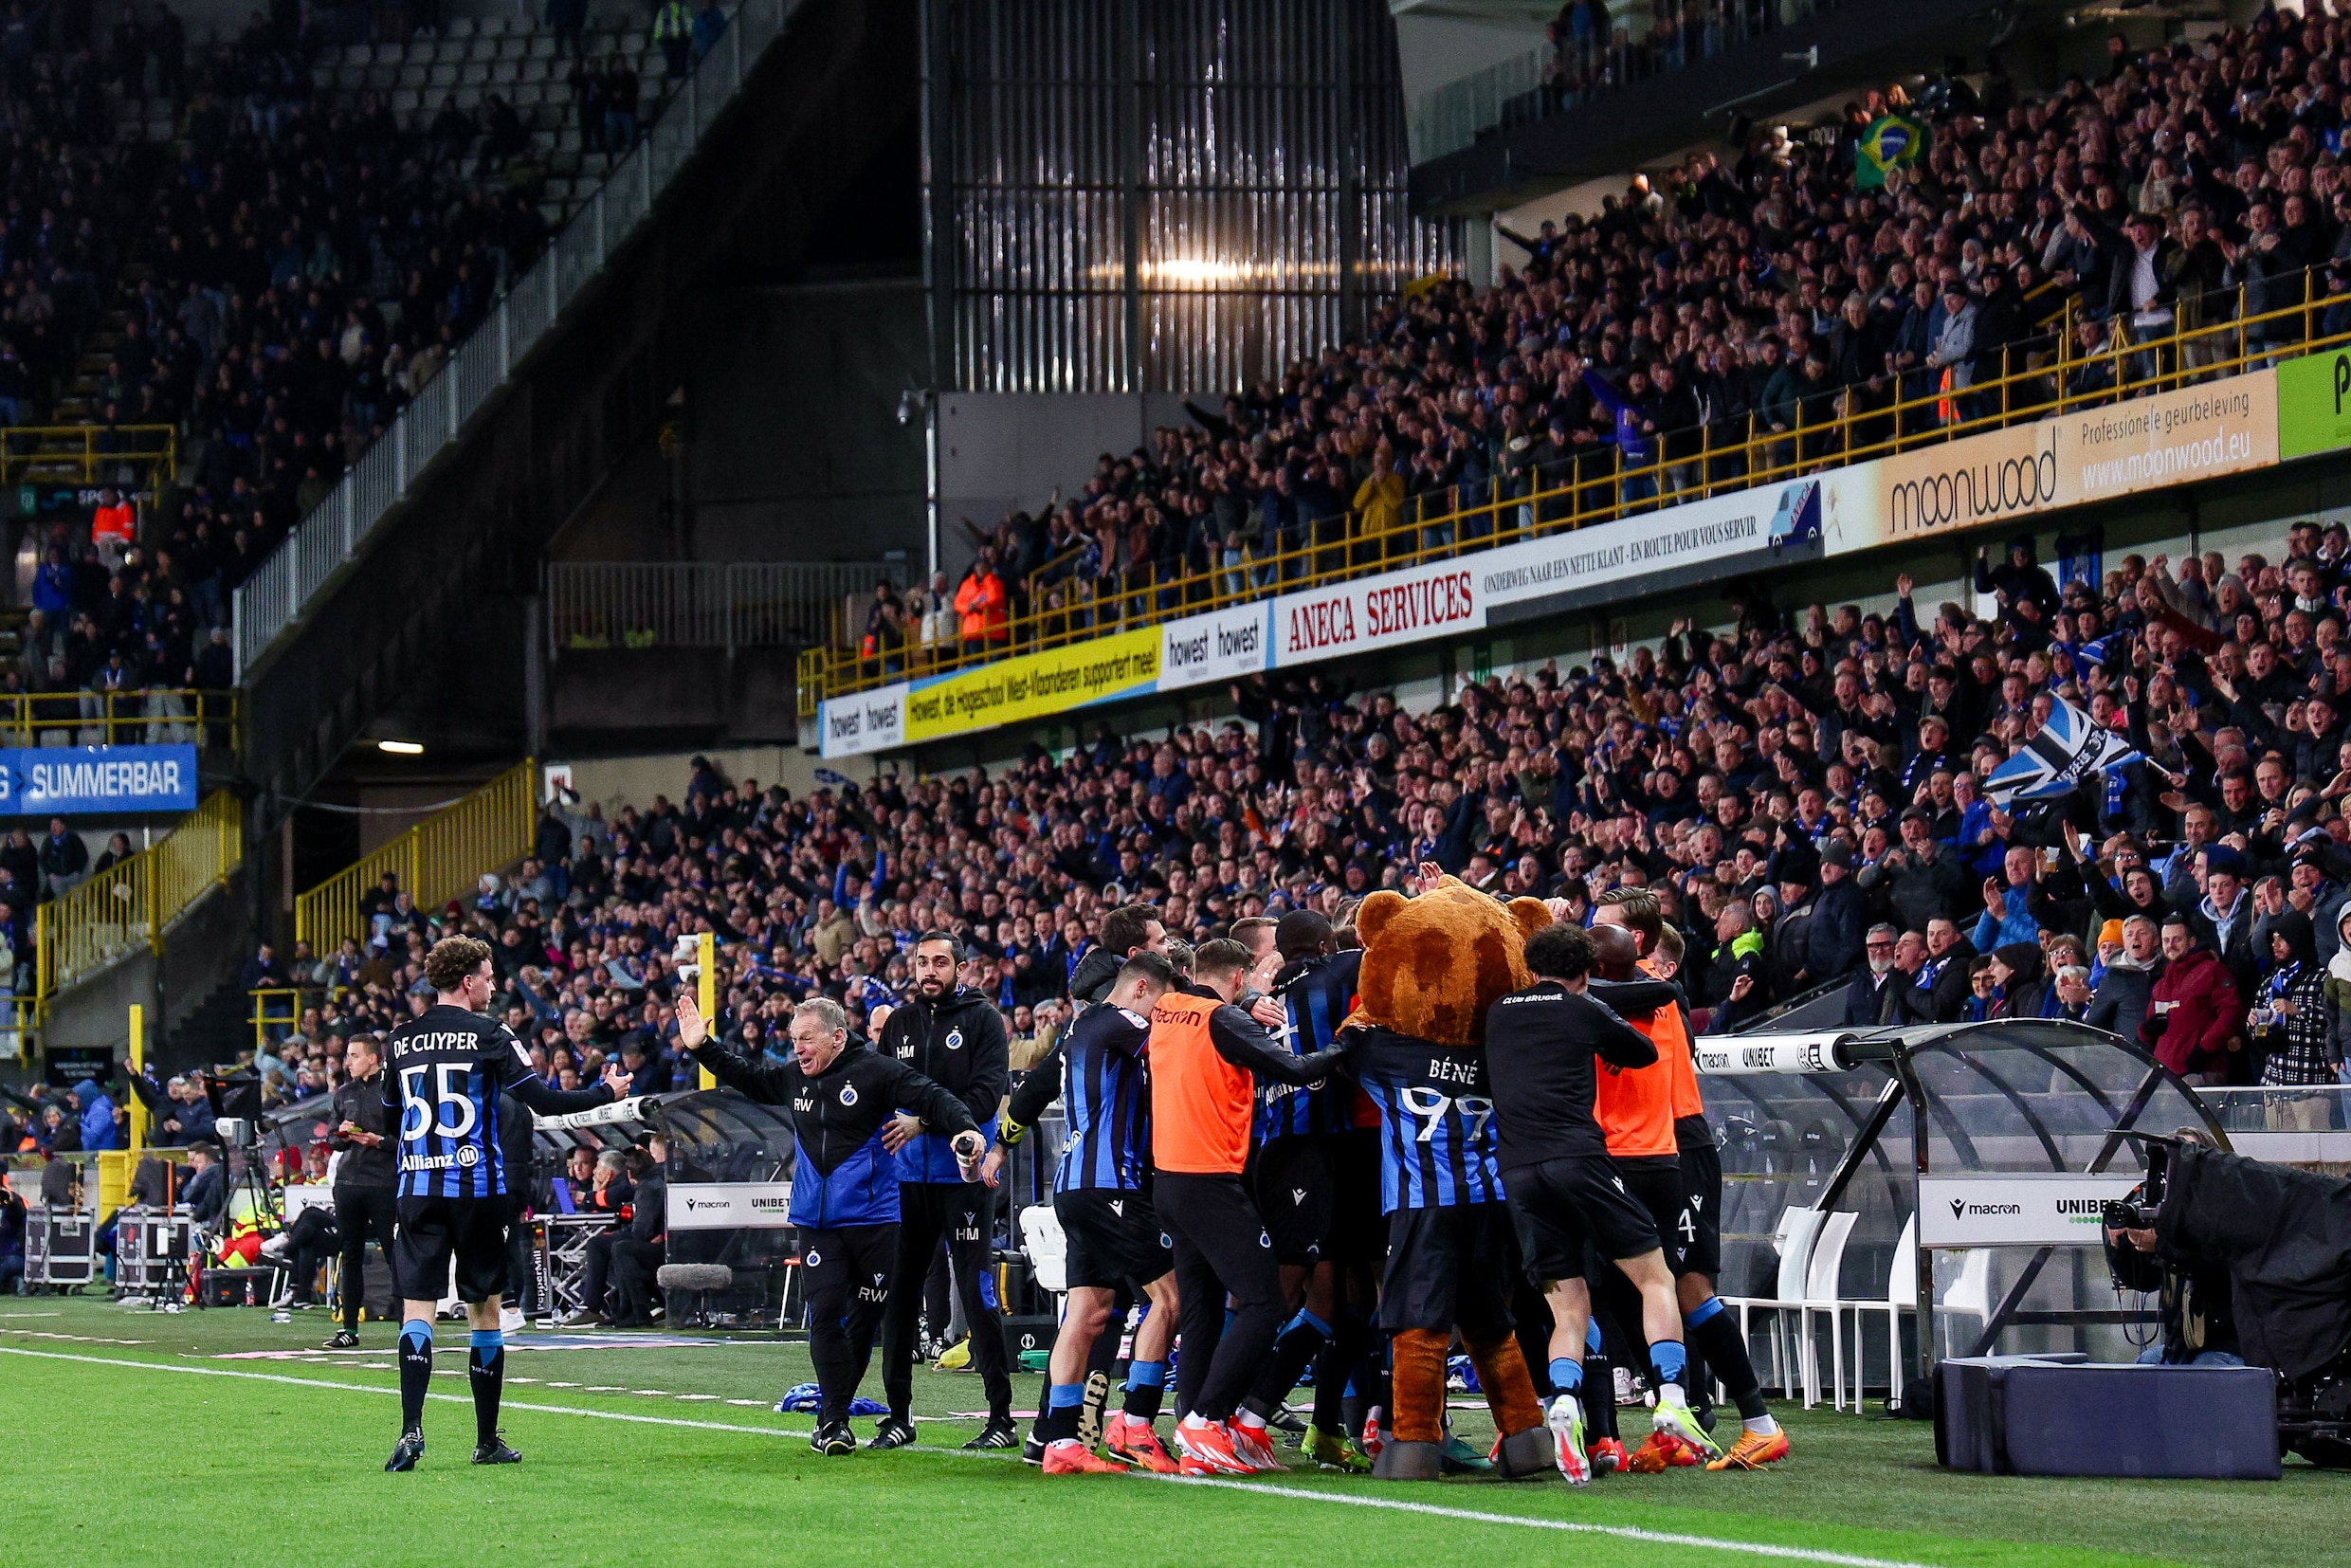 Club Brugge zet knappe reeks in Champions’ Play-off verder met zege tegen KRC Genk (4-0)